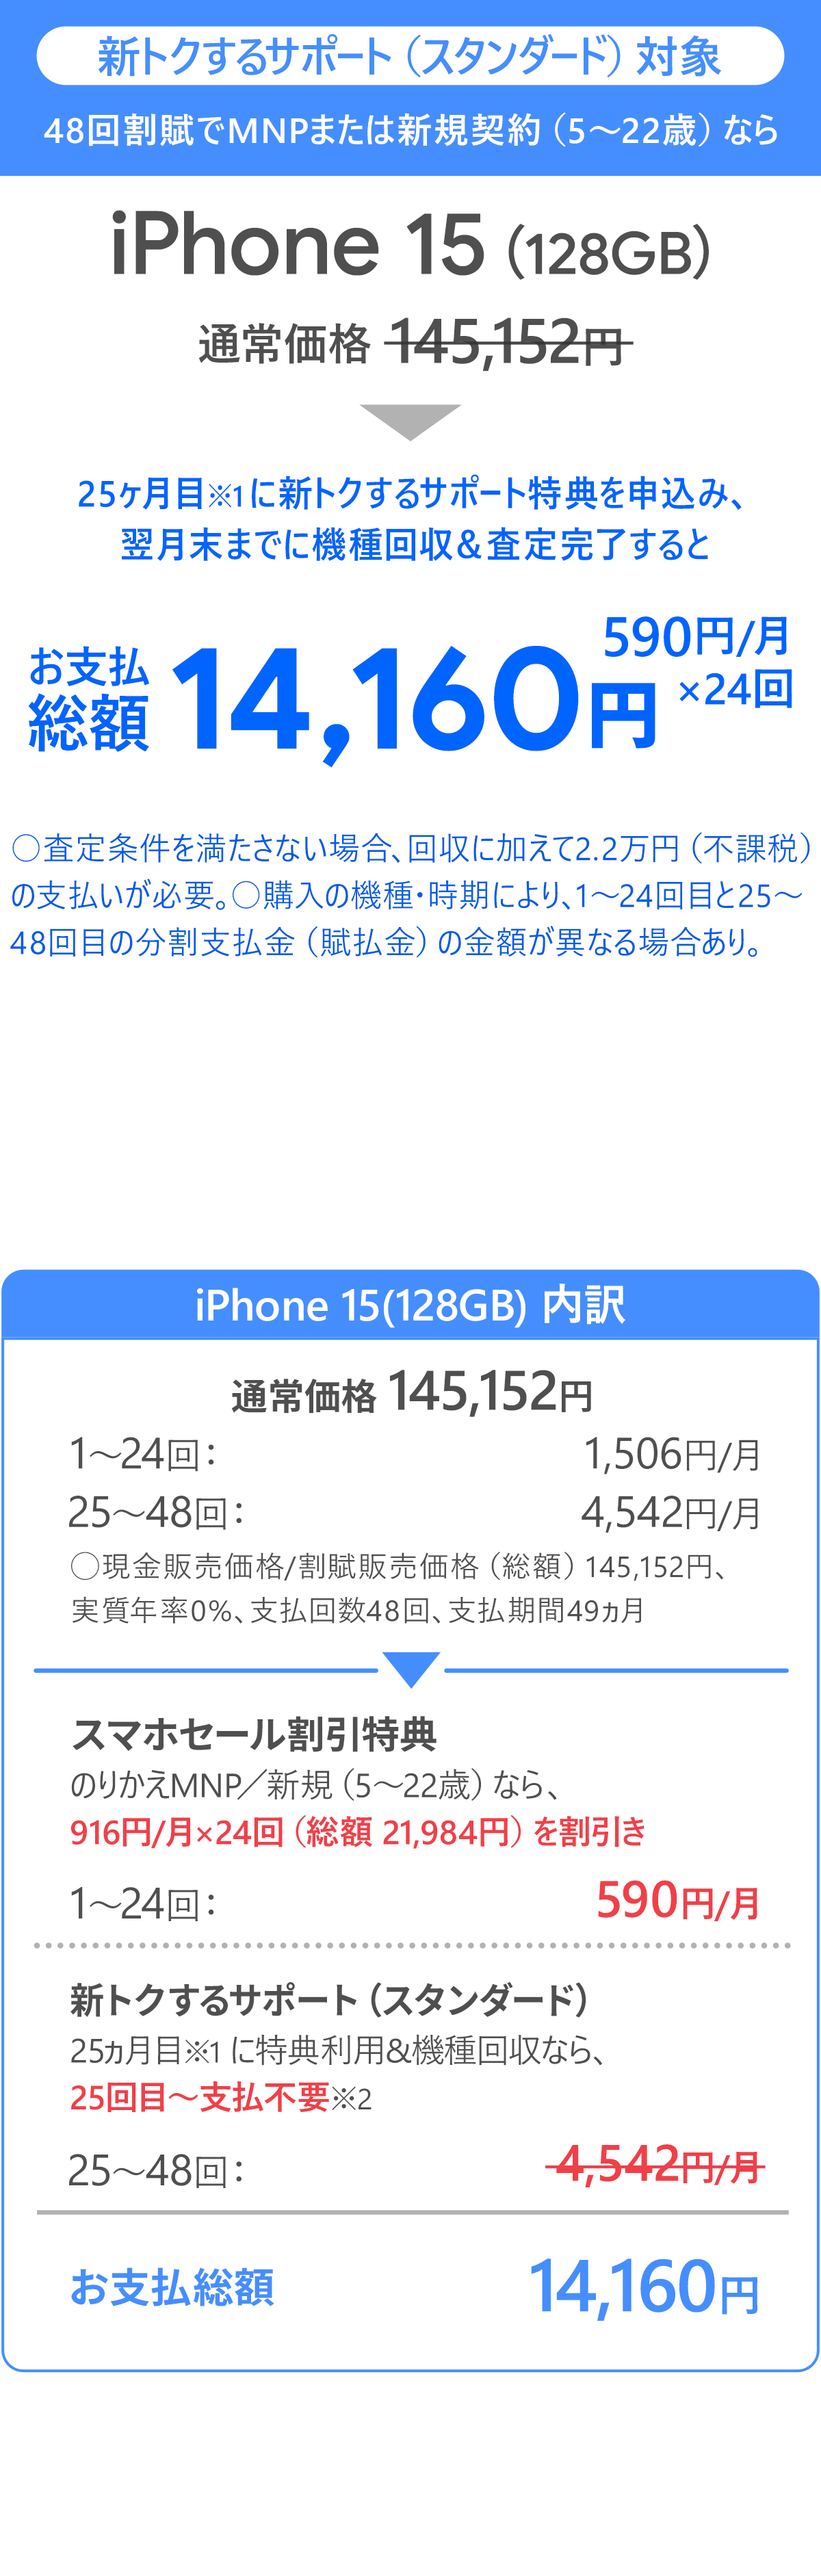 ソフトバンク「iPhone 15 128GB」大セール